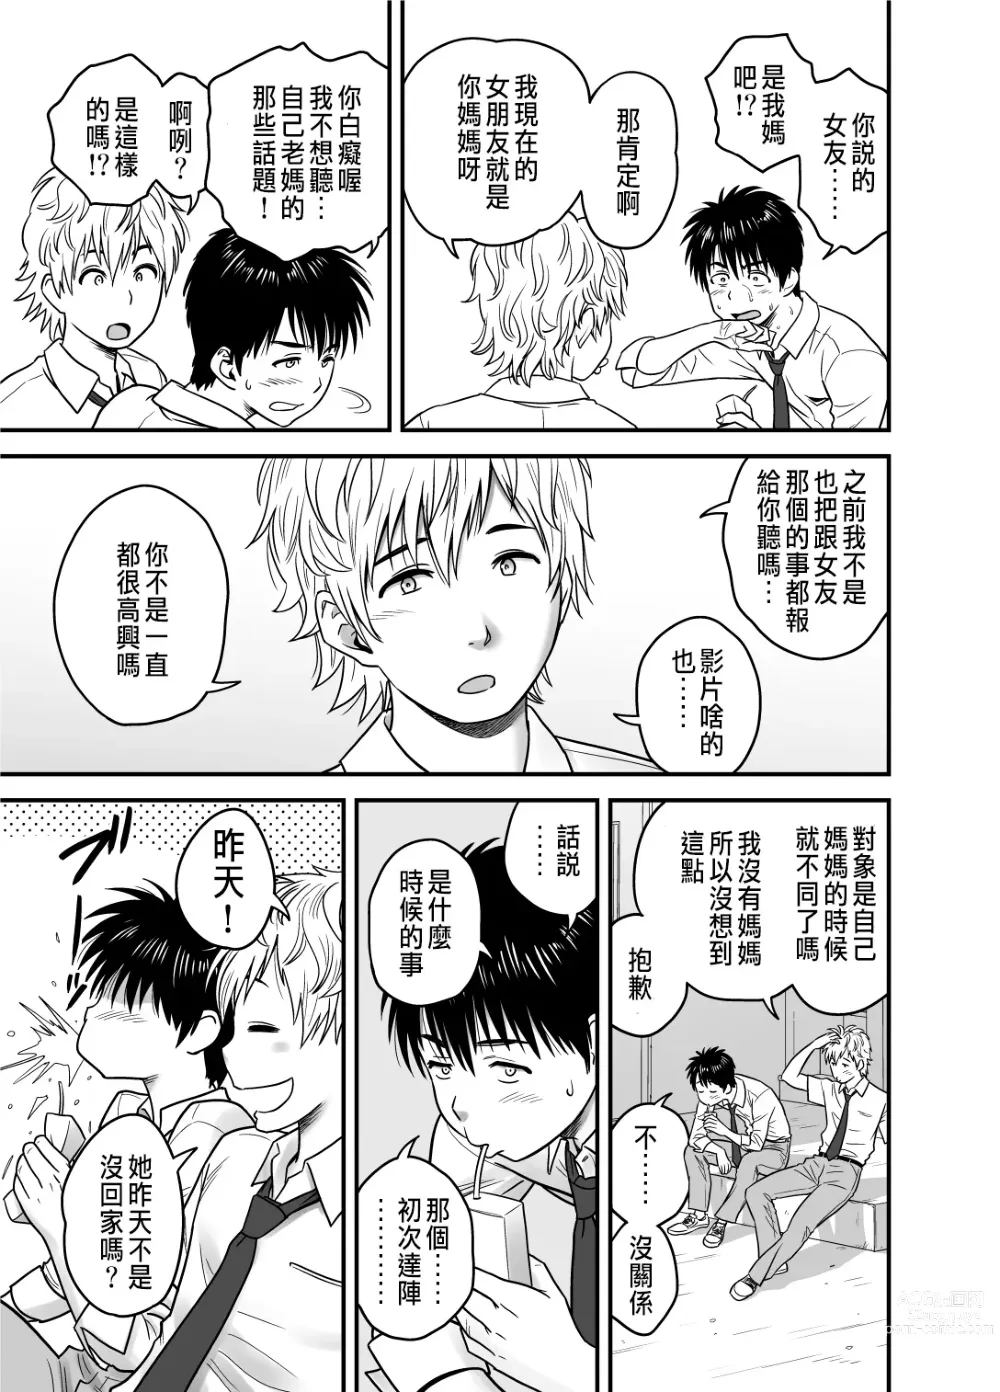 Page 19 of manga 母が友カノになったので